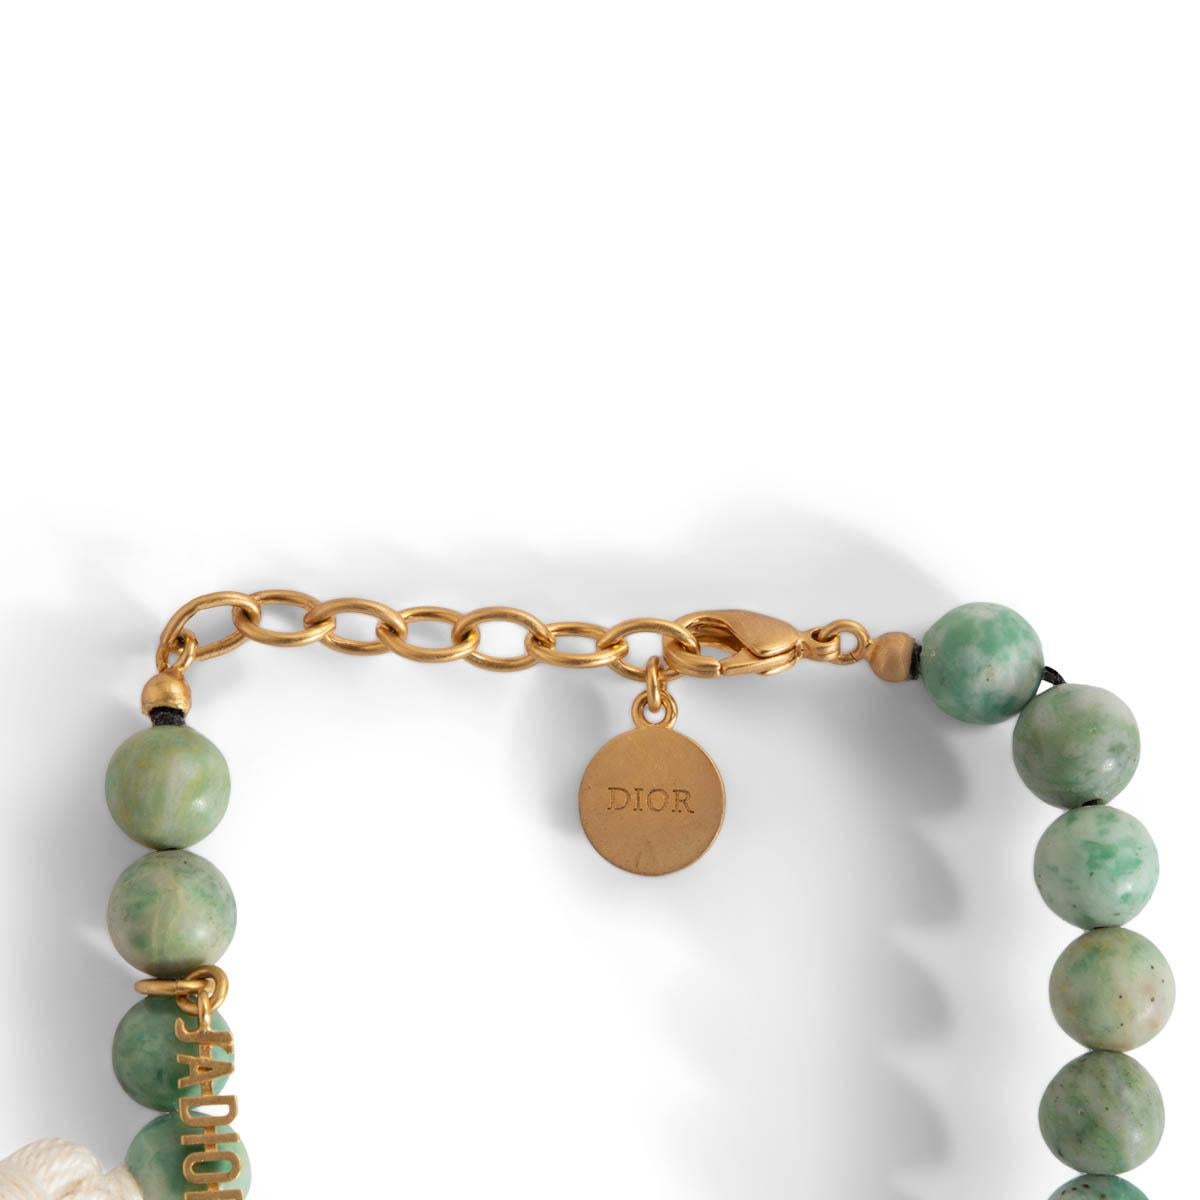 dior bracelet green